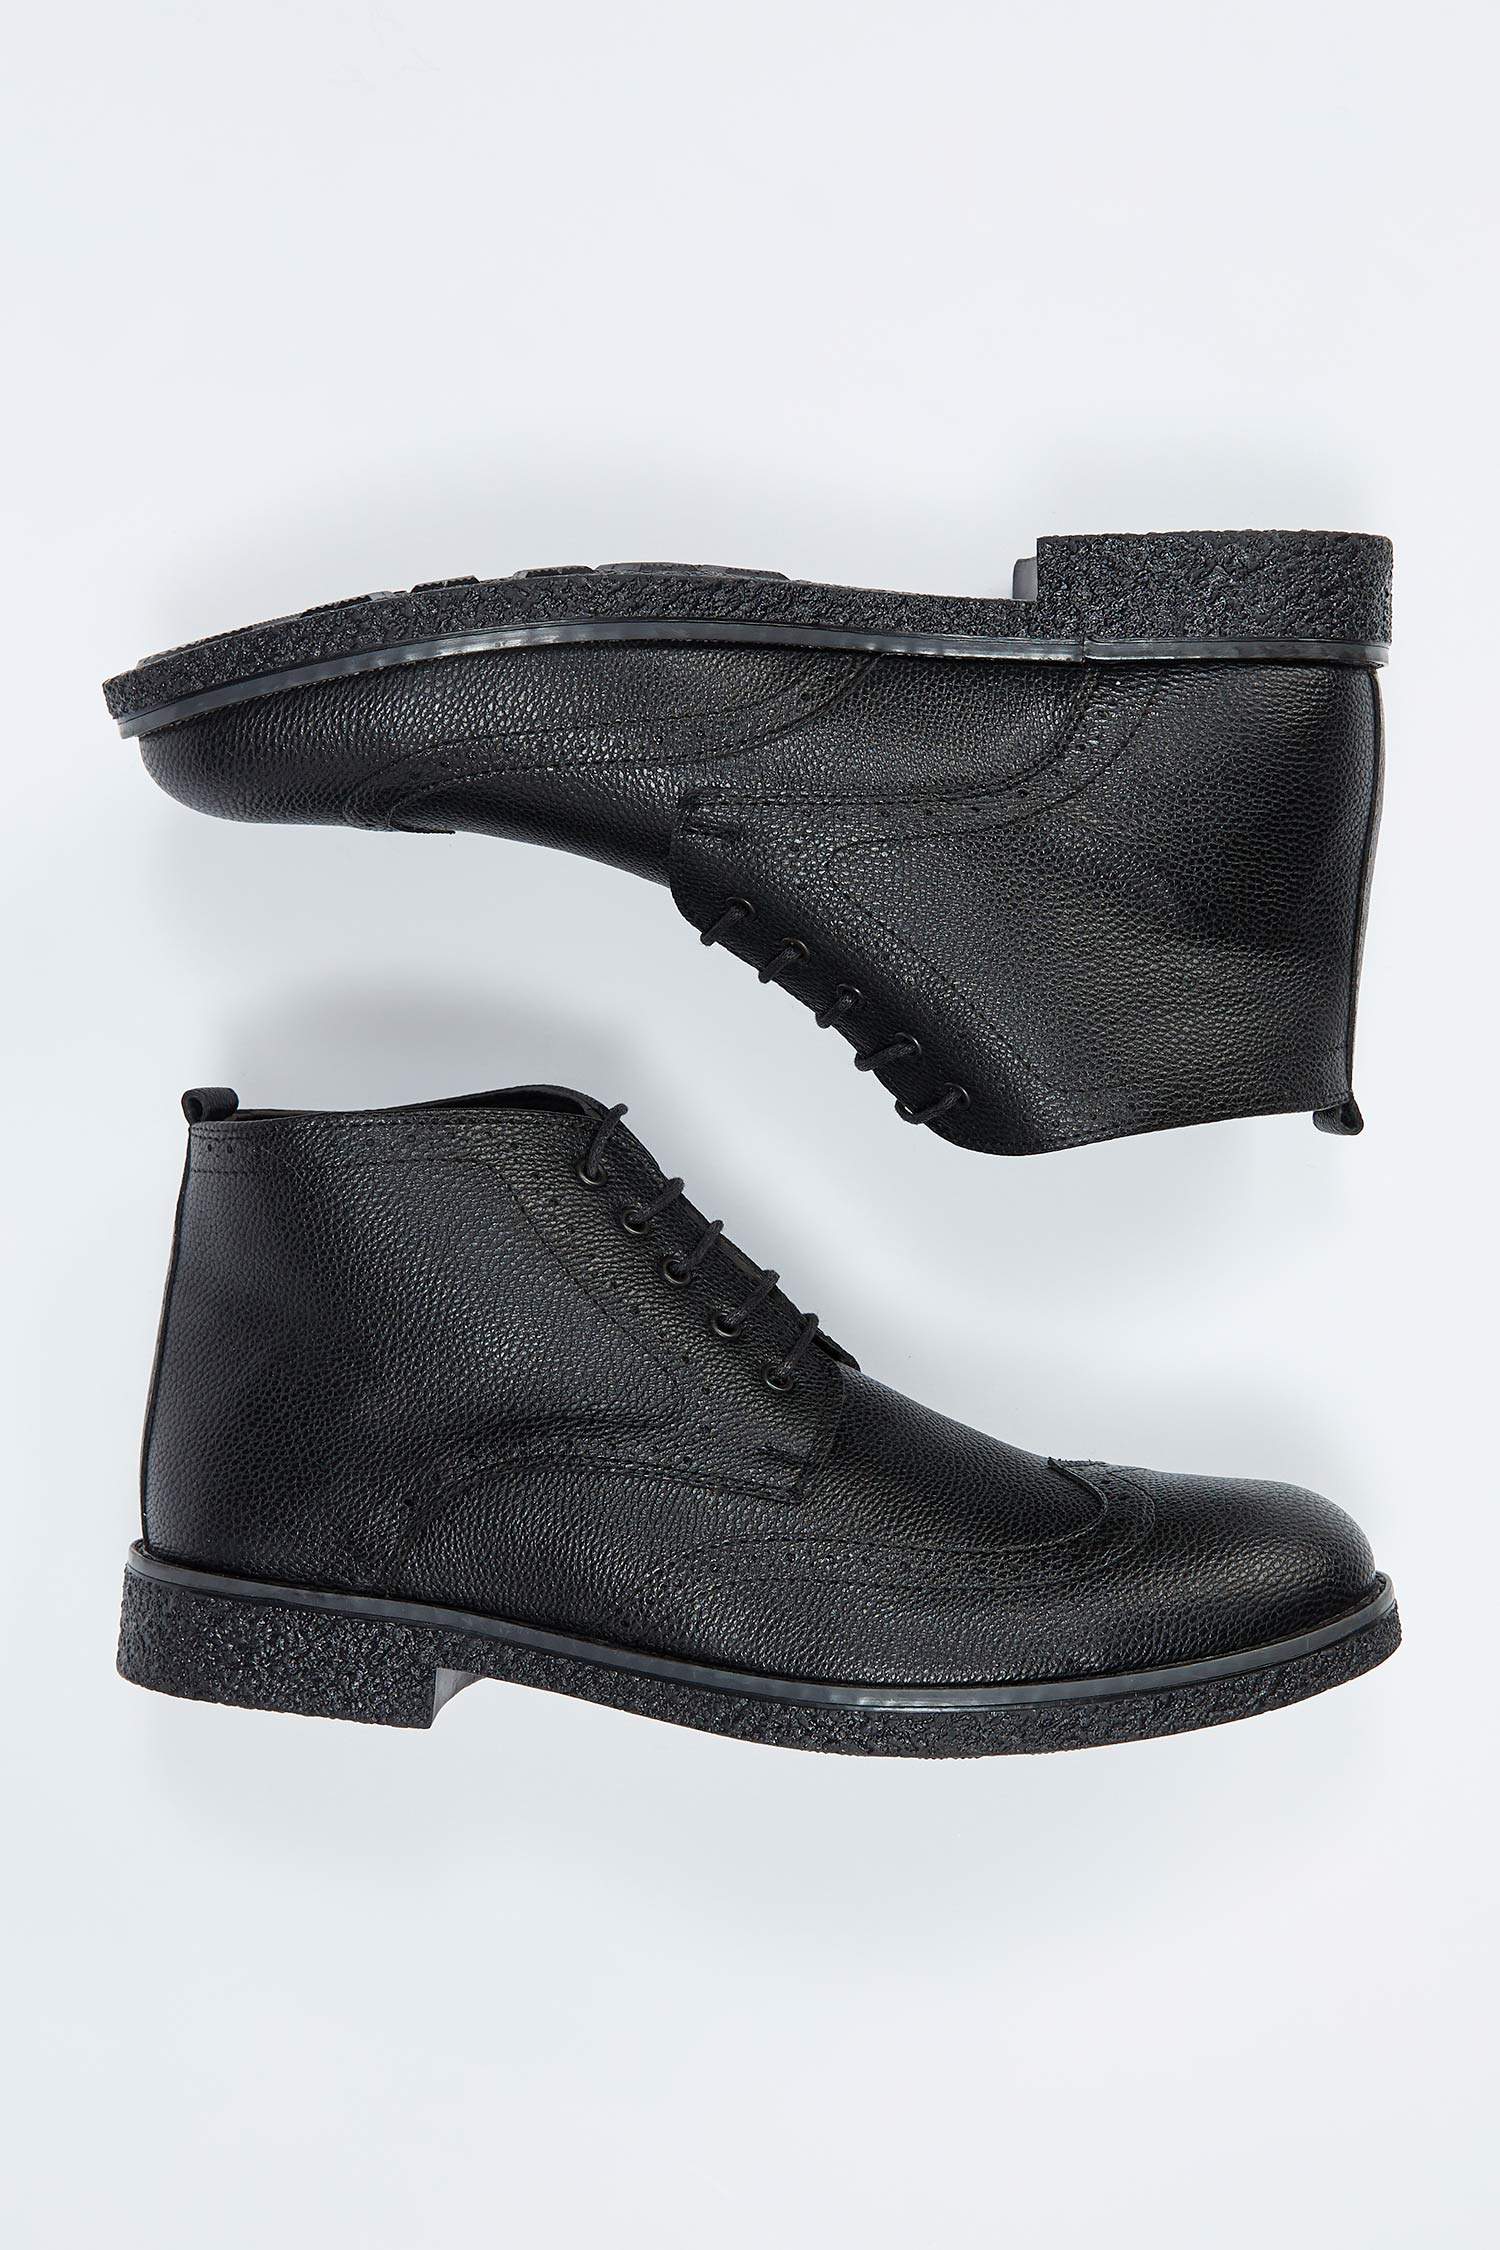 Black MAN Faux Leather Lace up Boots 1569853 | DeFacto